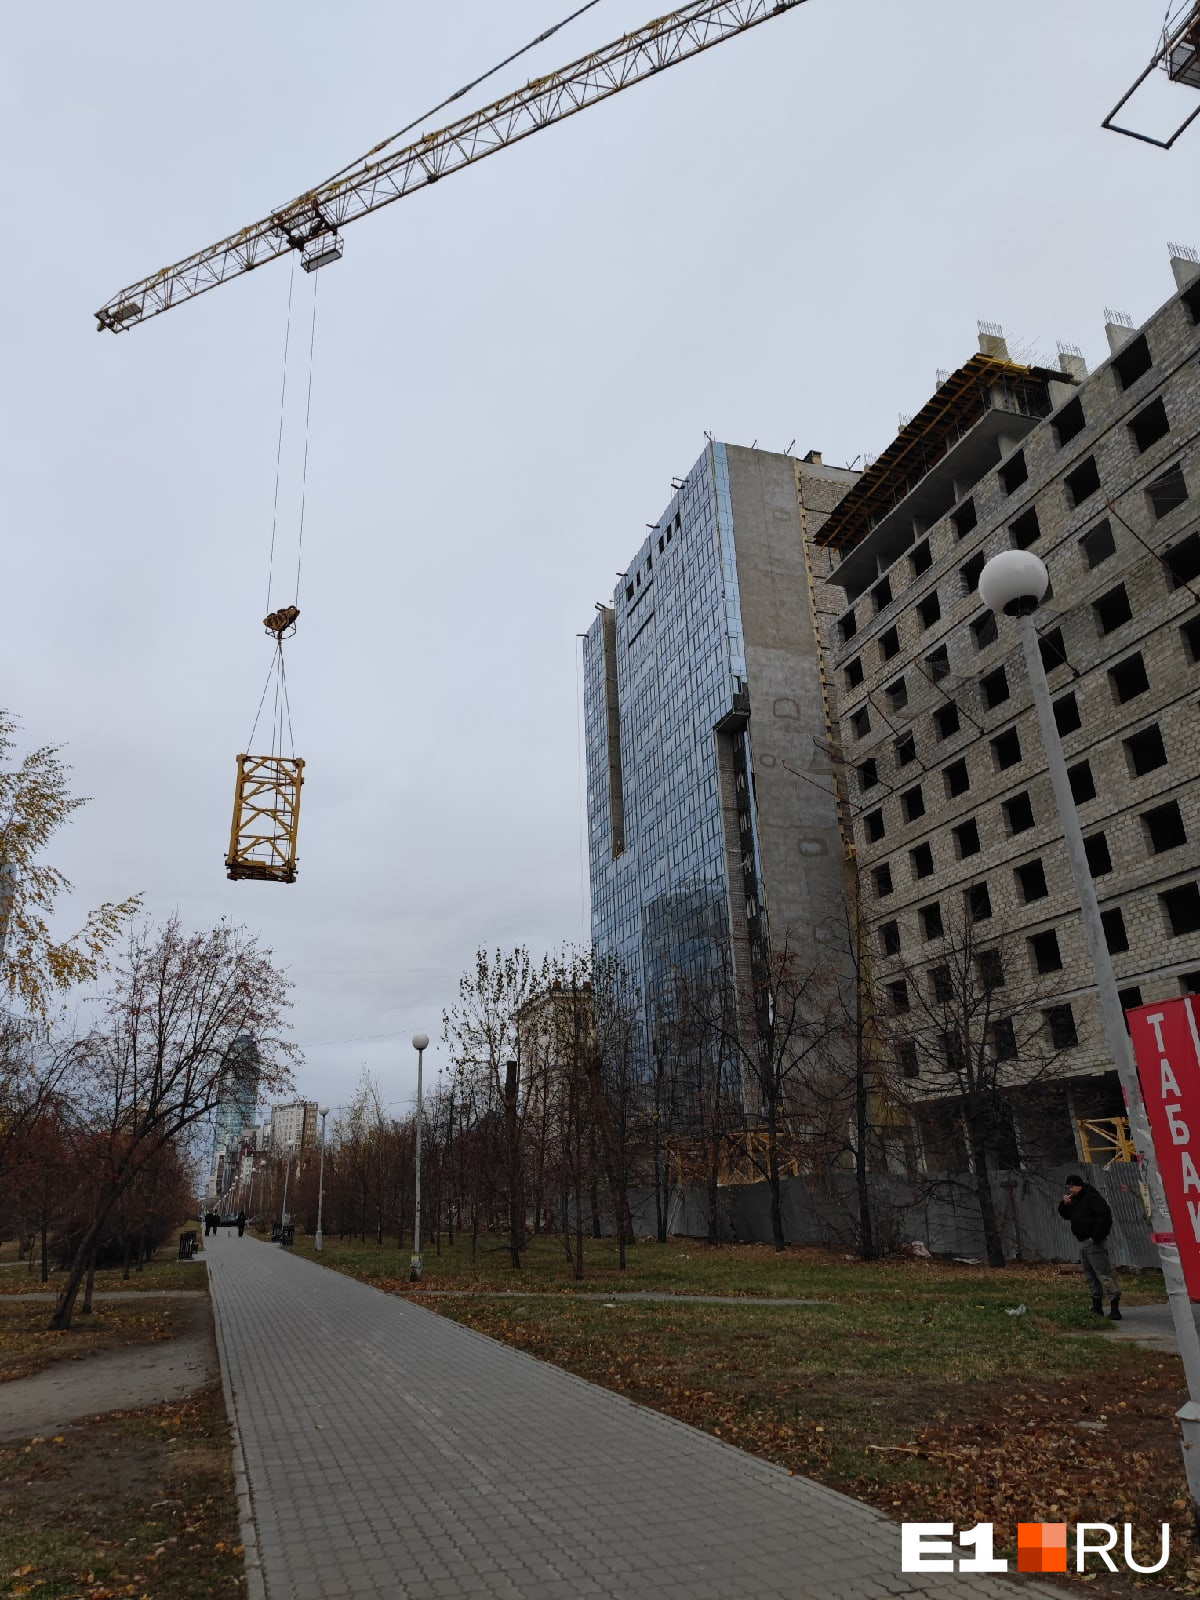 В Екатеринбурге прямо над гуляющими людьми повис груз со строительного крана. Видео